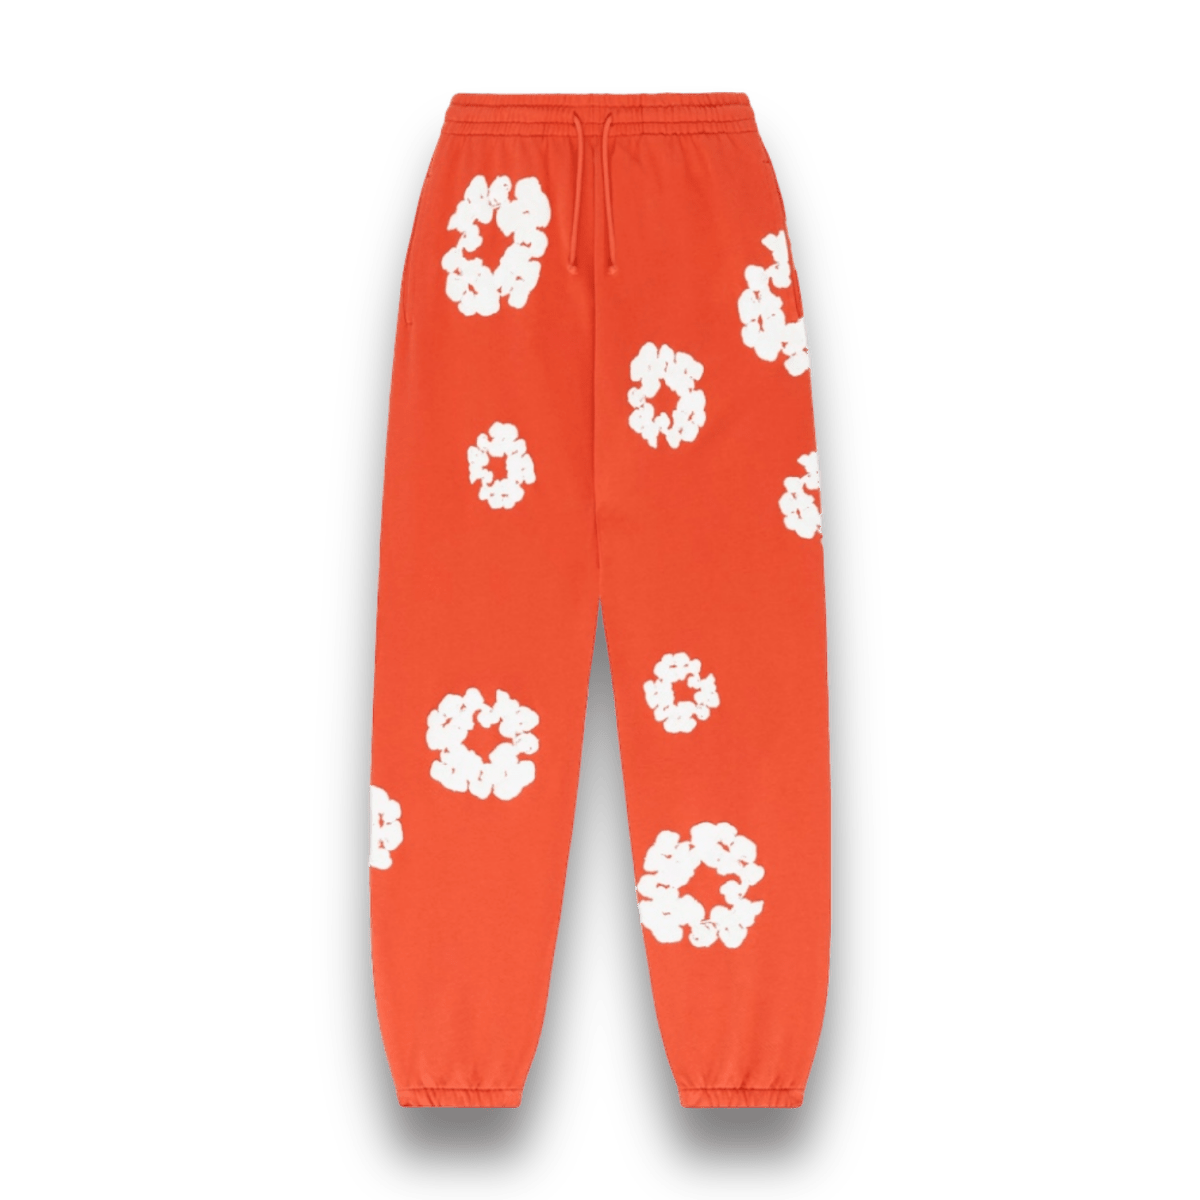 Denim Tears Cotton Wreath Sweatpants Orange - Clothing - Jawns on Fire Sneakers & Streetwear